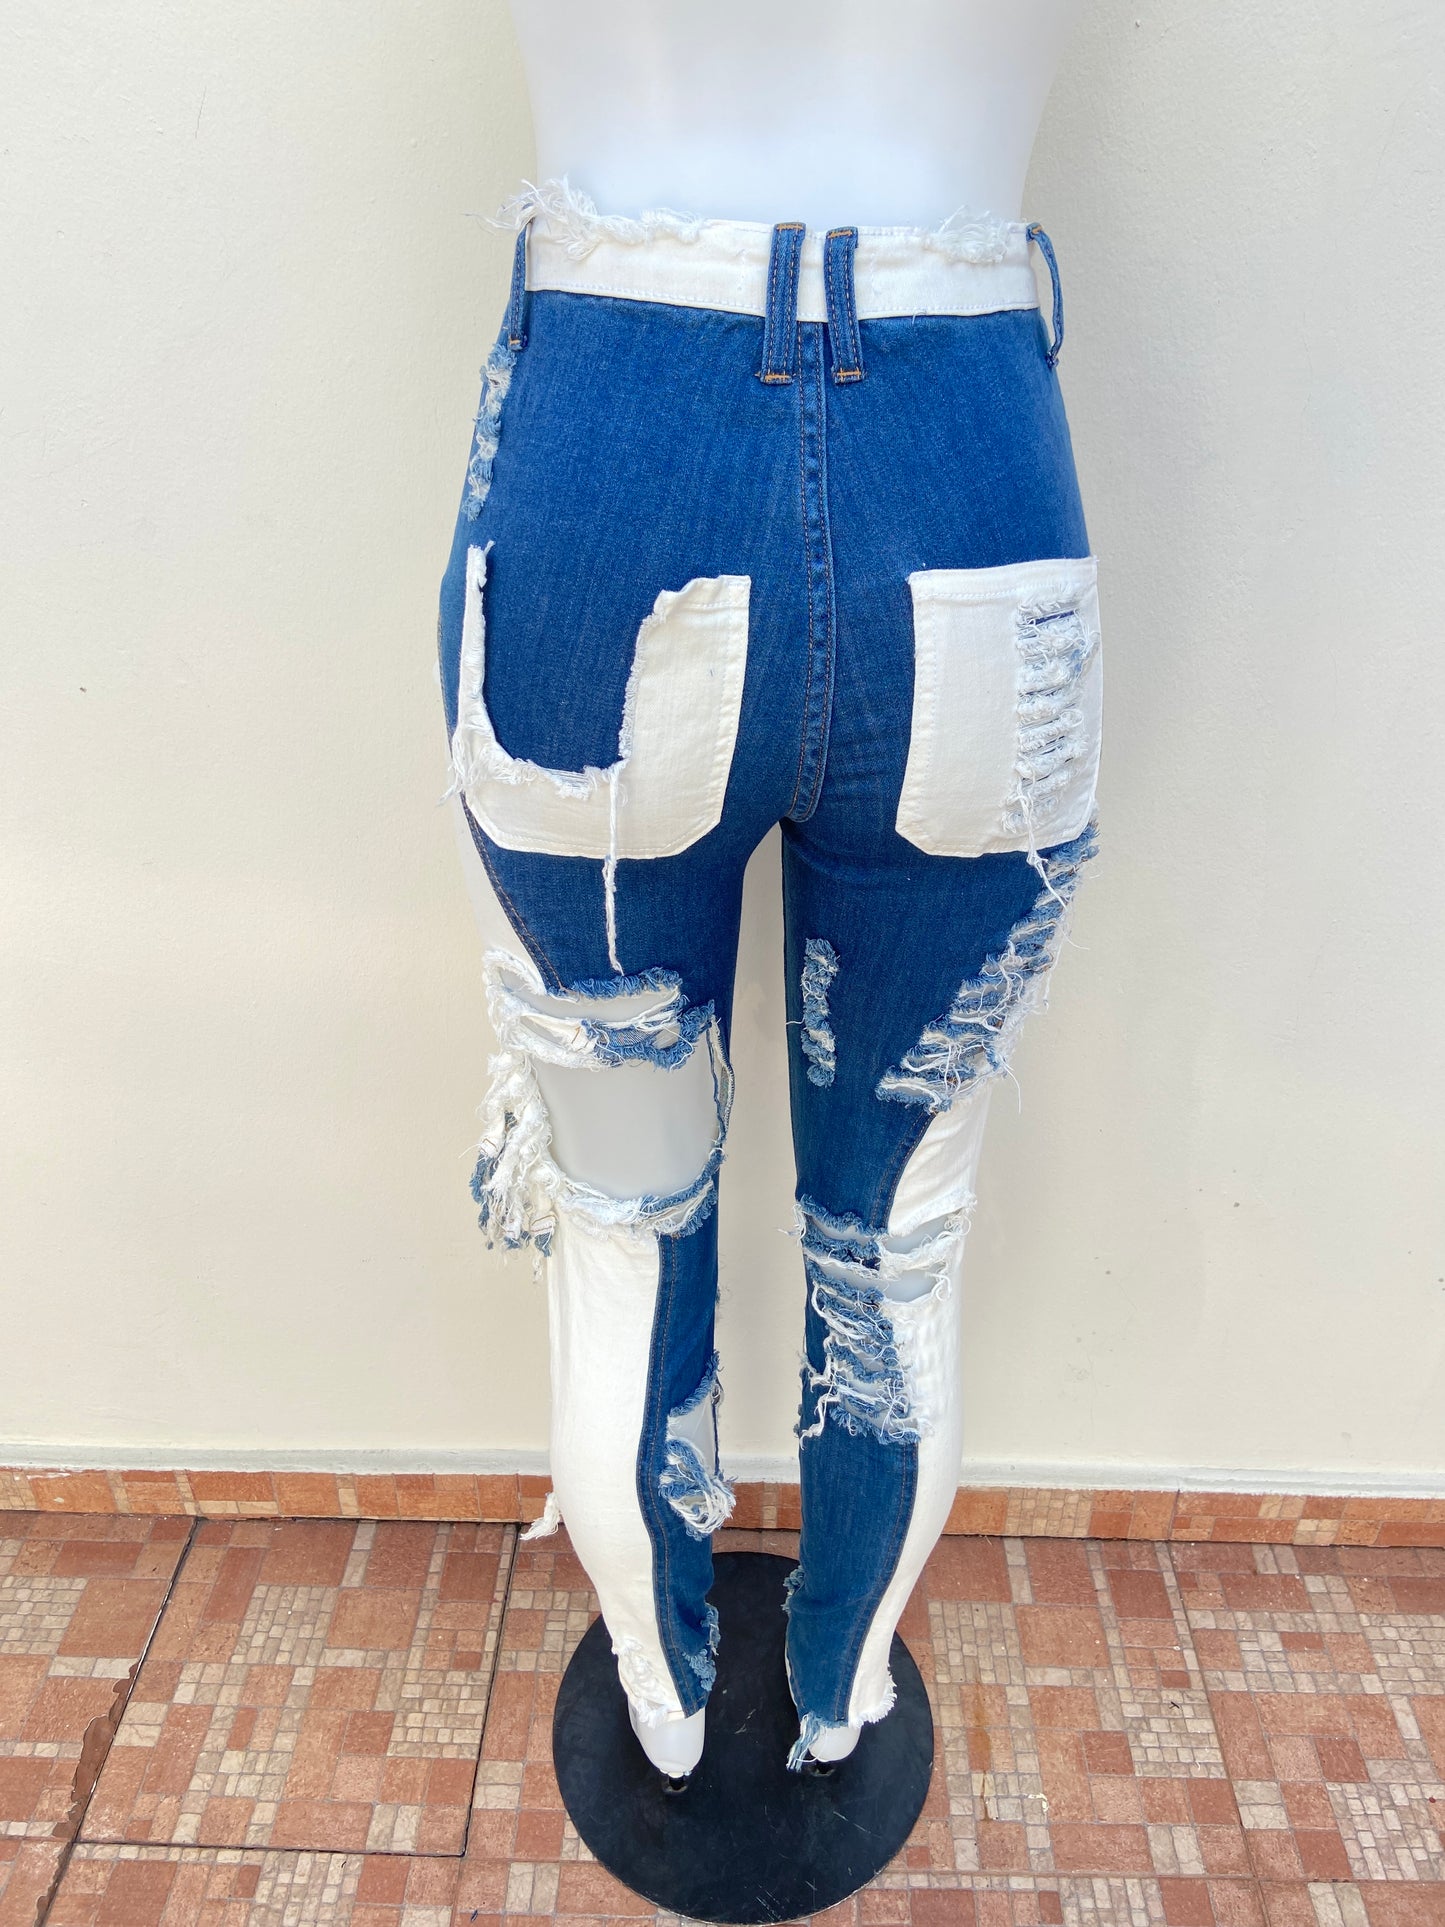 Pantalon Jean Fashion Nova original azul marino y blanco con rasgados y bolsillos en color blanco.